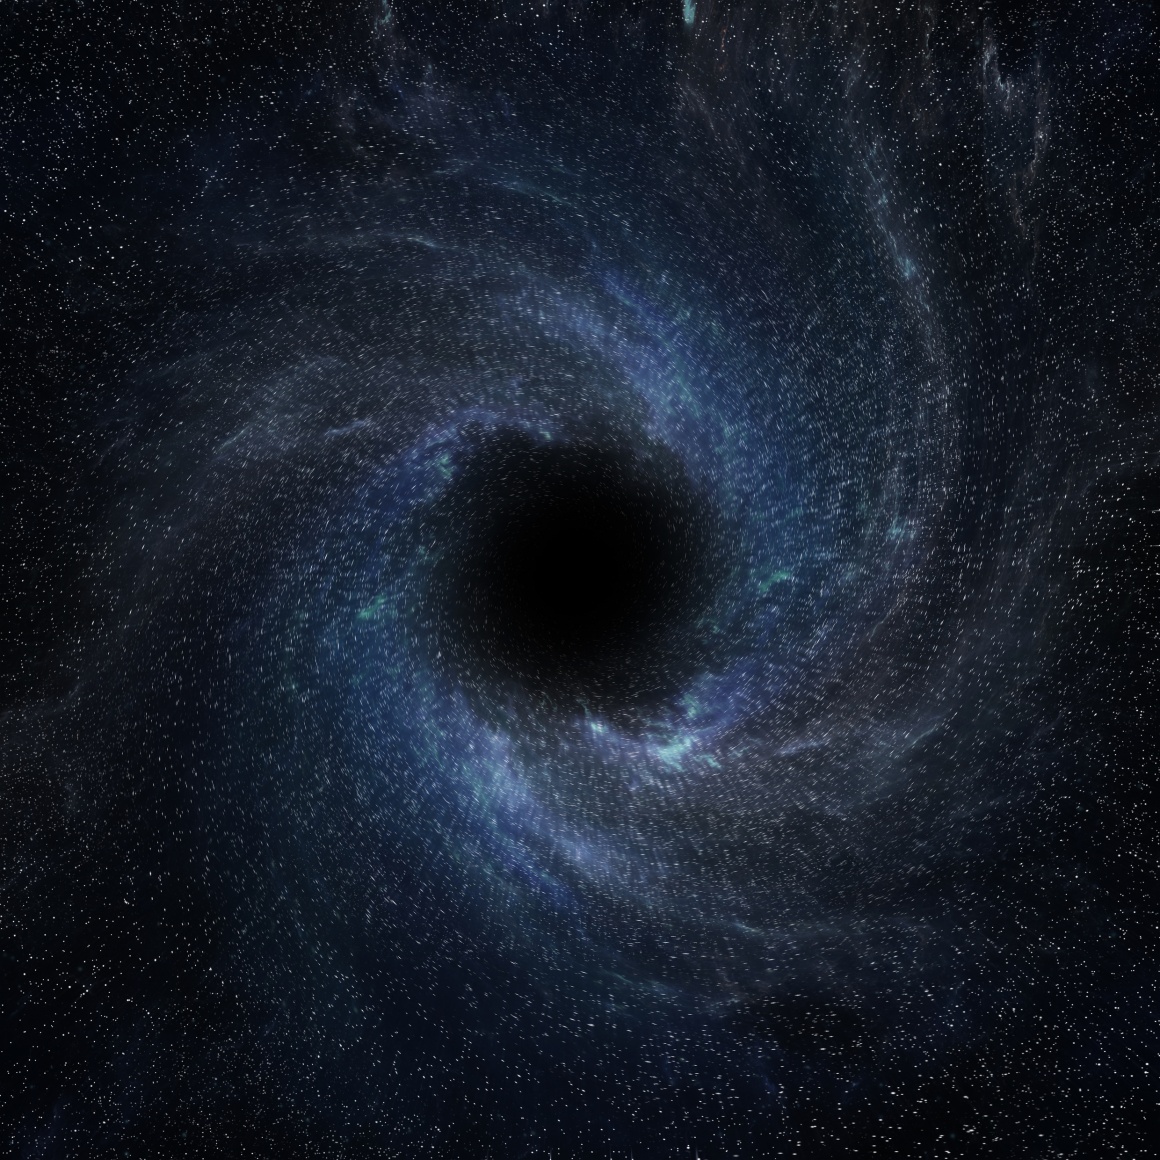 Black hole; Copyright: panthermedia.net/sdecoret